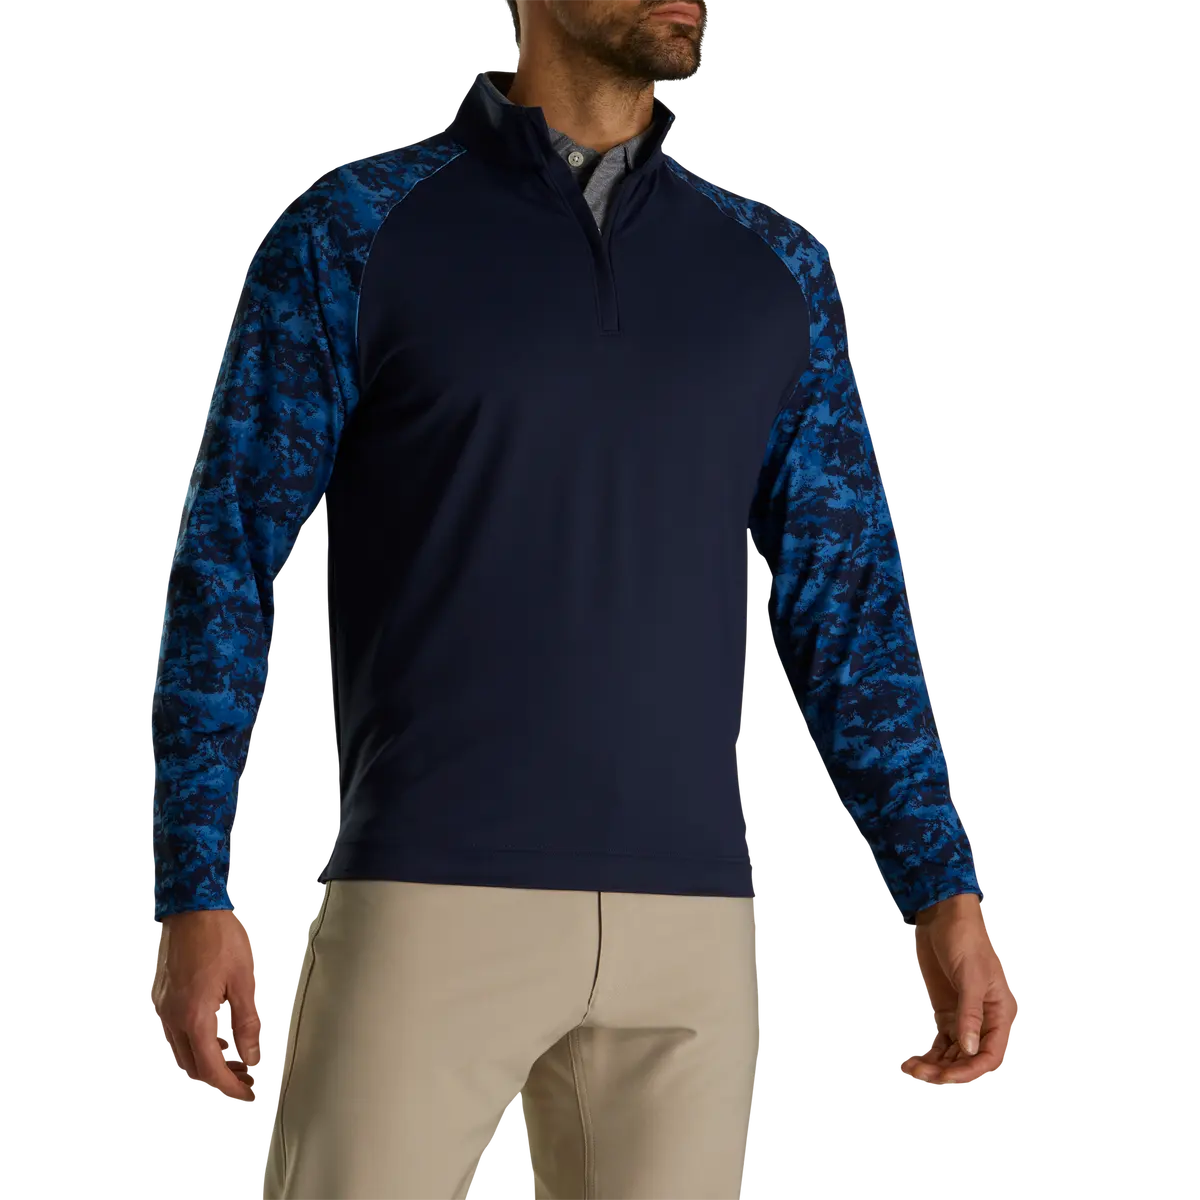 Jersey de golf con cuello de media cremallera de camuflaje personalizado, cortavientos impermeable de poliéster, Sudaderas con cuello de cremallera de 1/4 cuartos para hombre